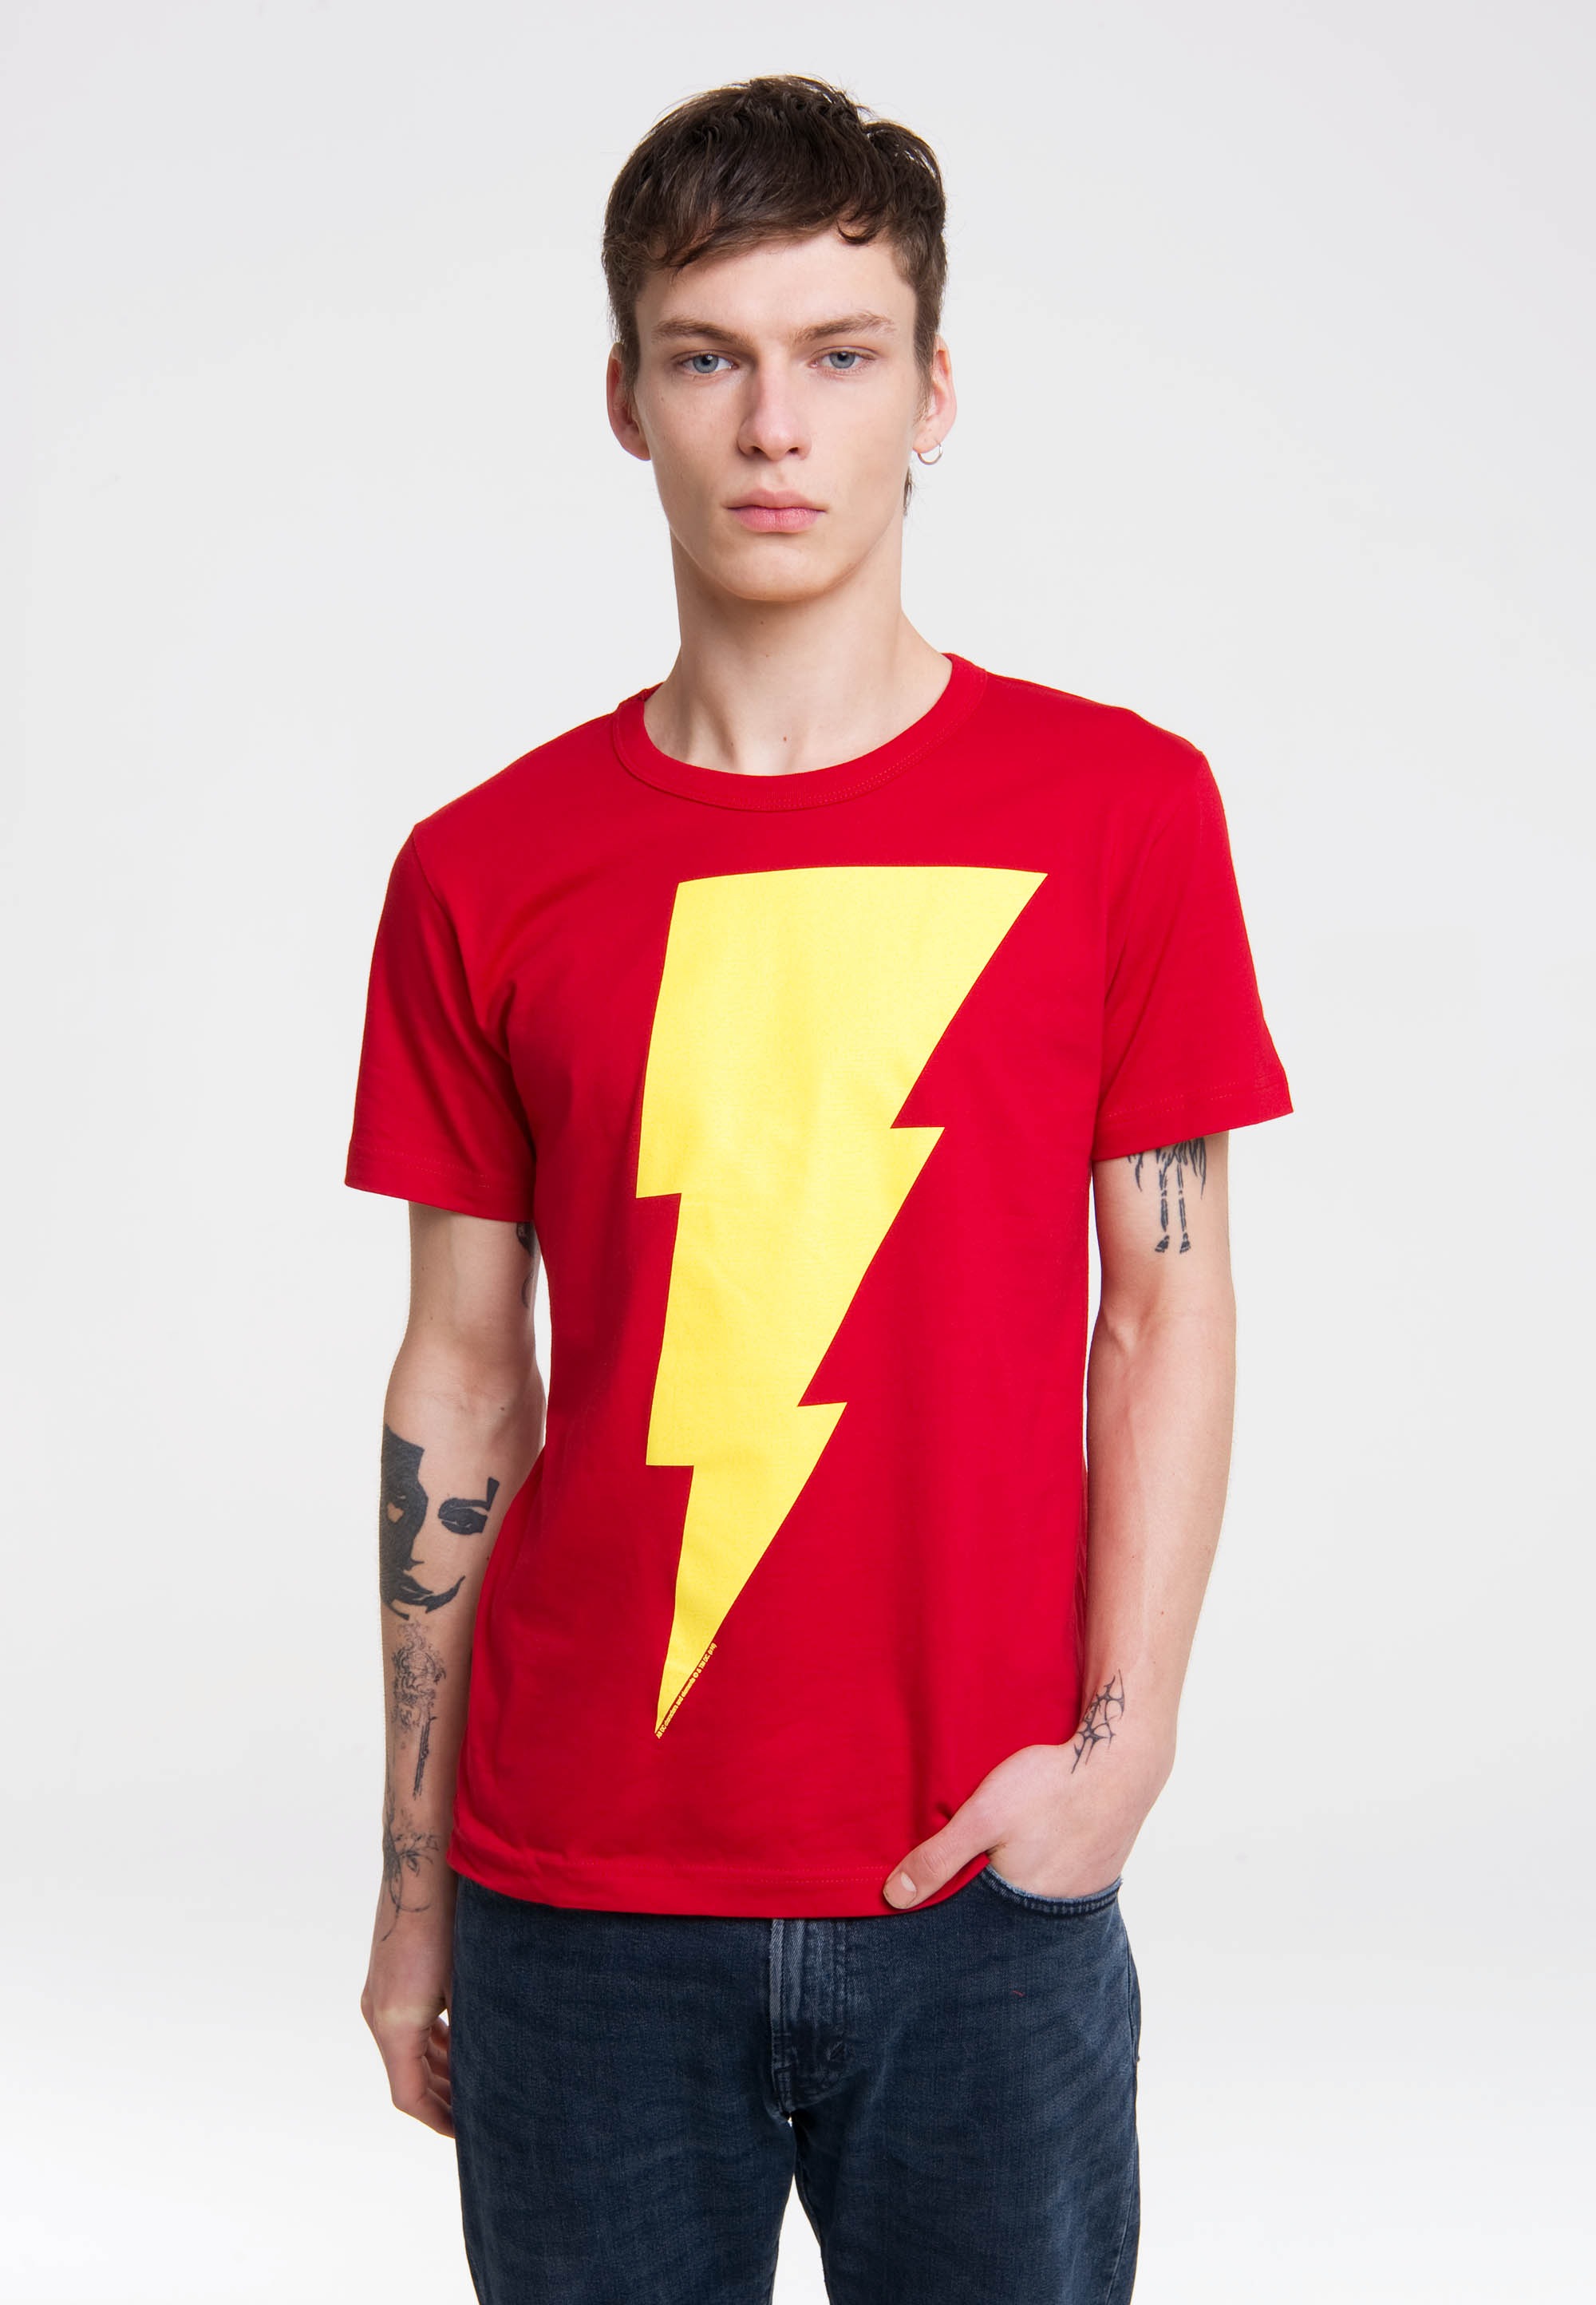 LOGOSHIRT T-Shirt »Shazam Logo«, mit hochwertigem Print